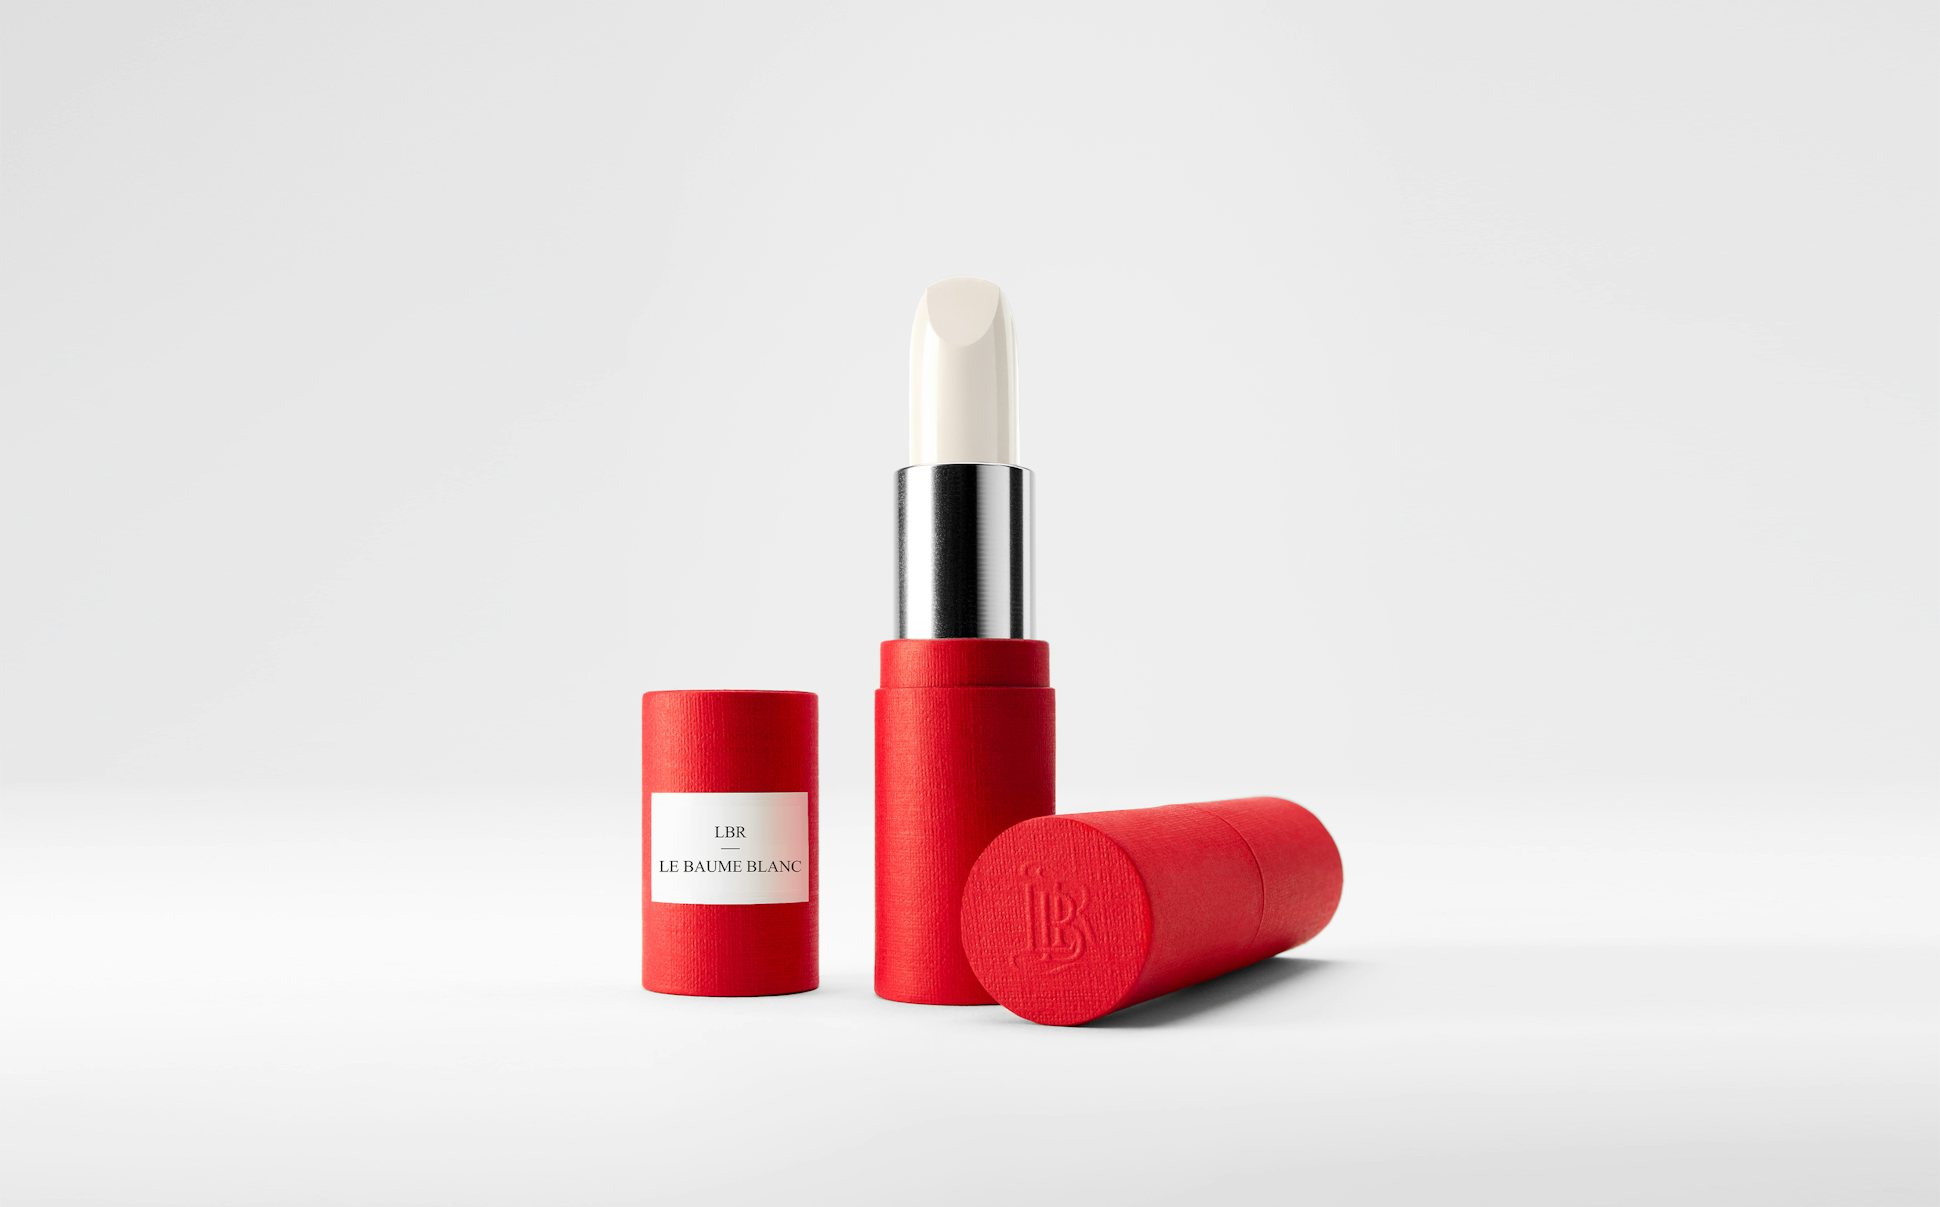 La bouche rouge White balm lipstick in the red paper case